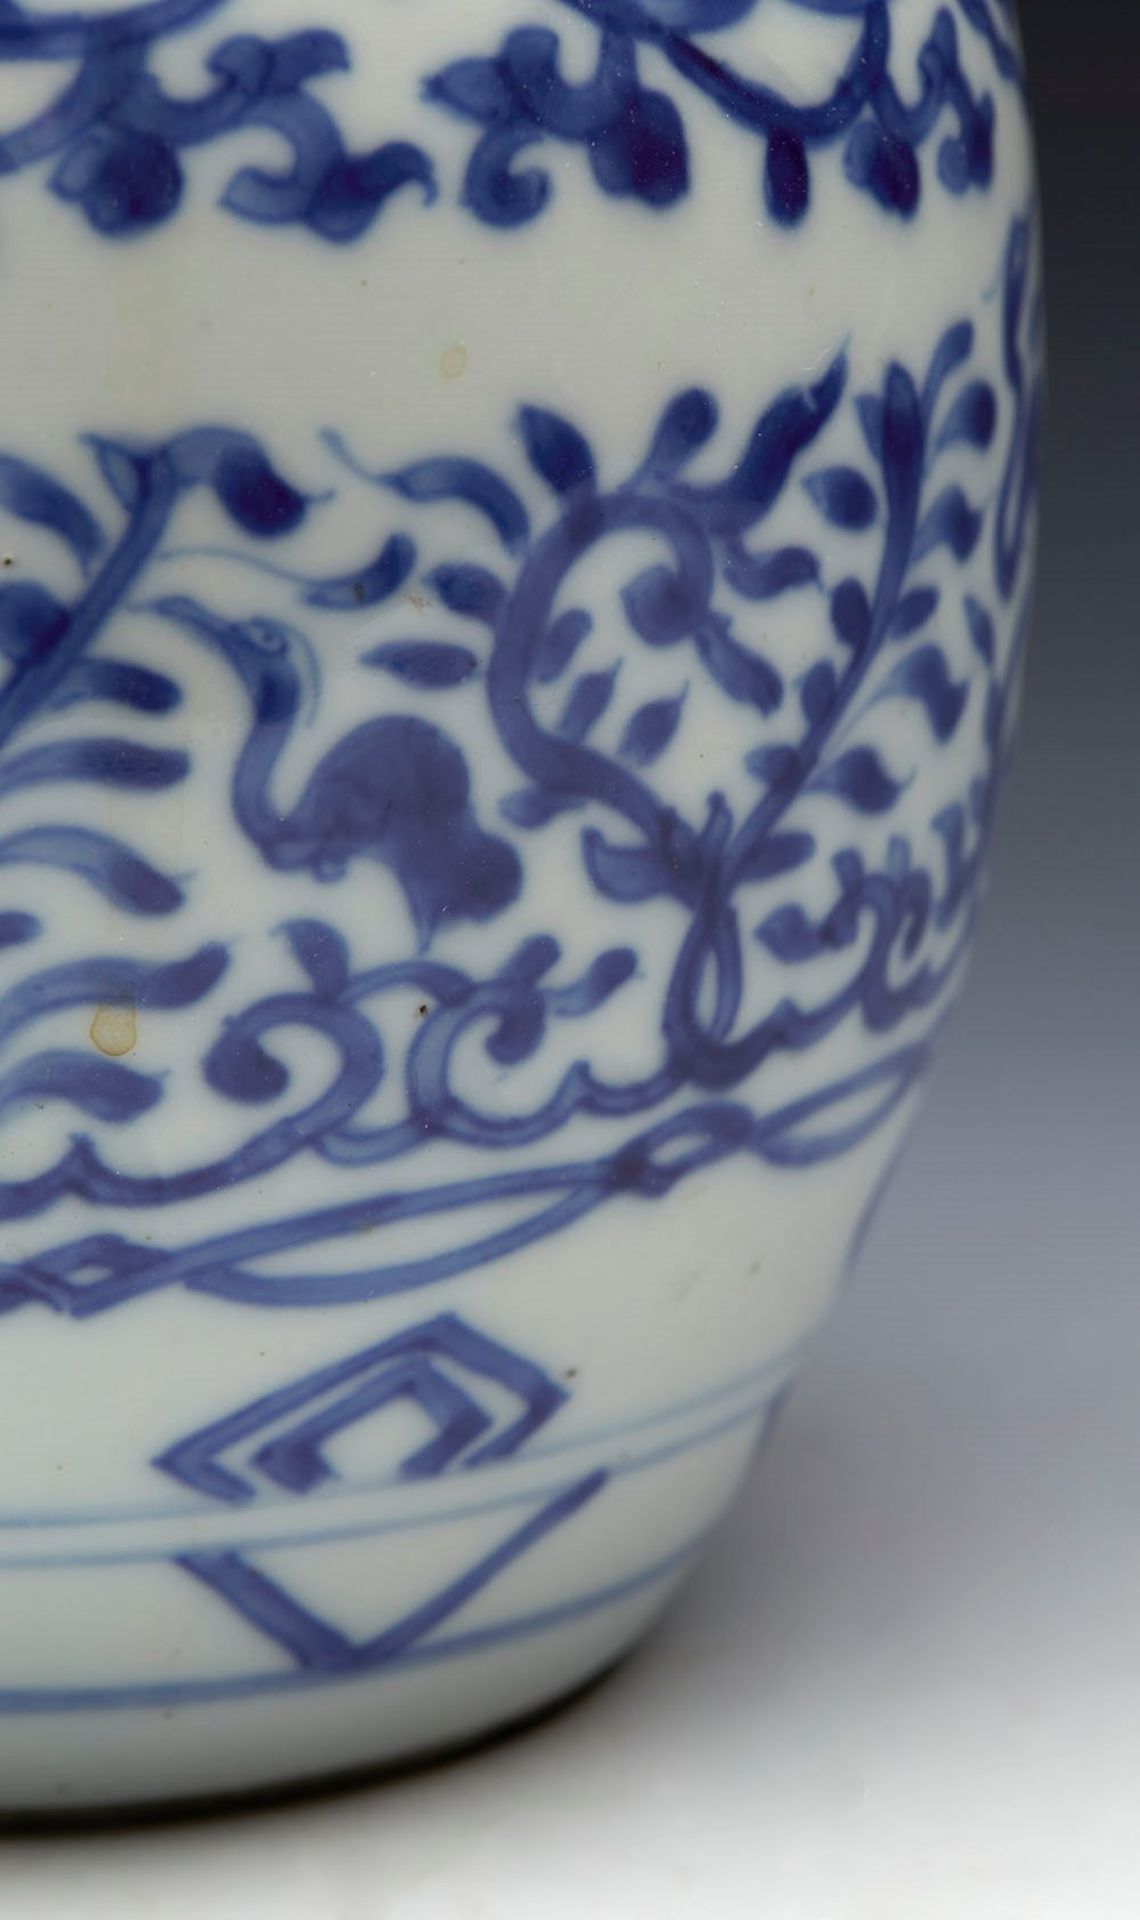 Antique Chinese Kangxi Jar 1662 - 1722 - Image 7 of 10